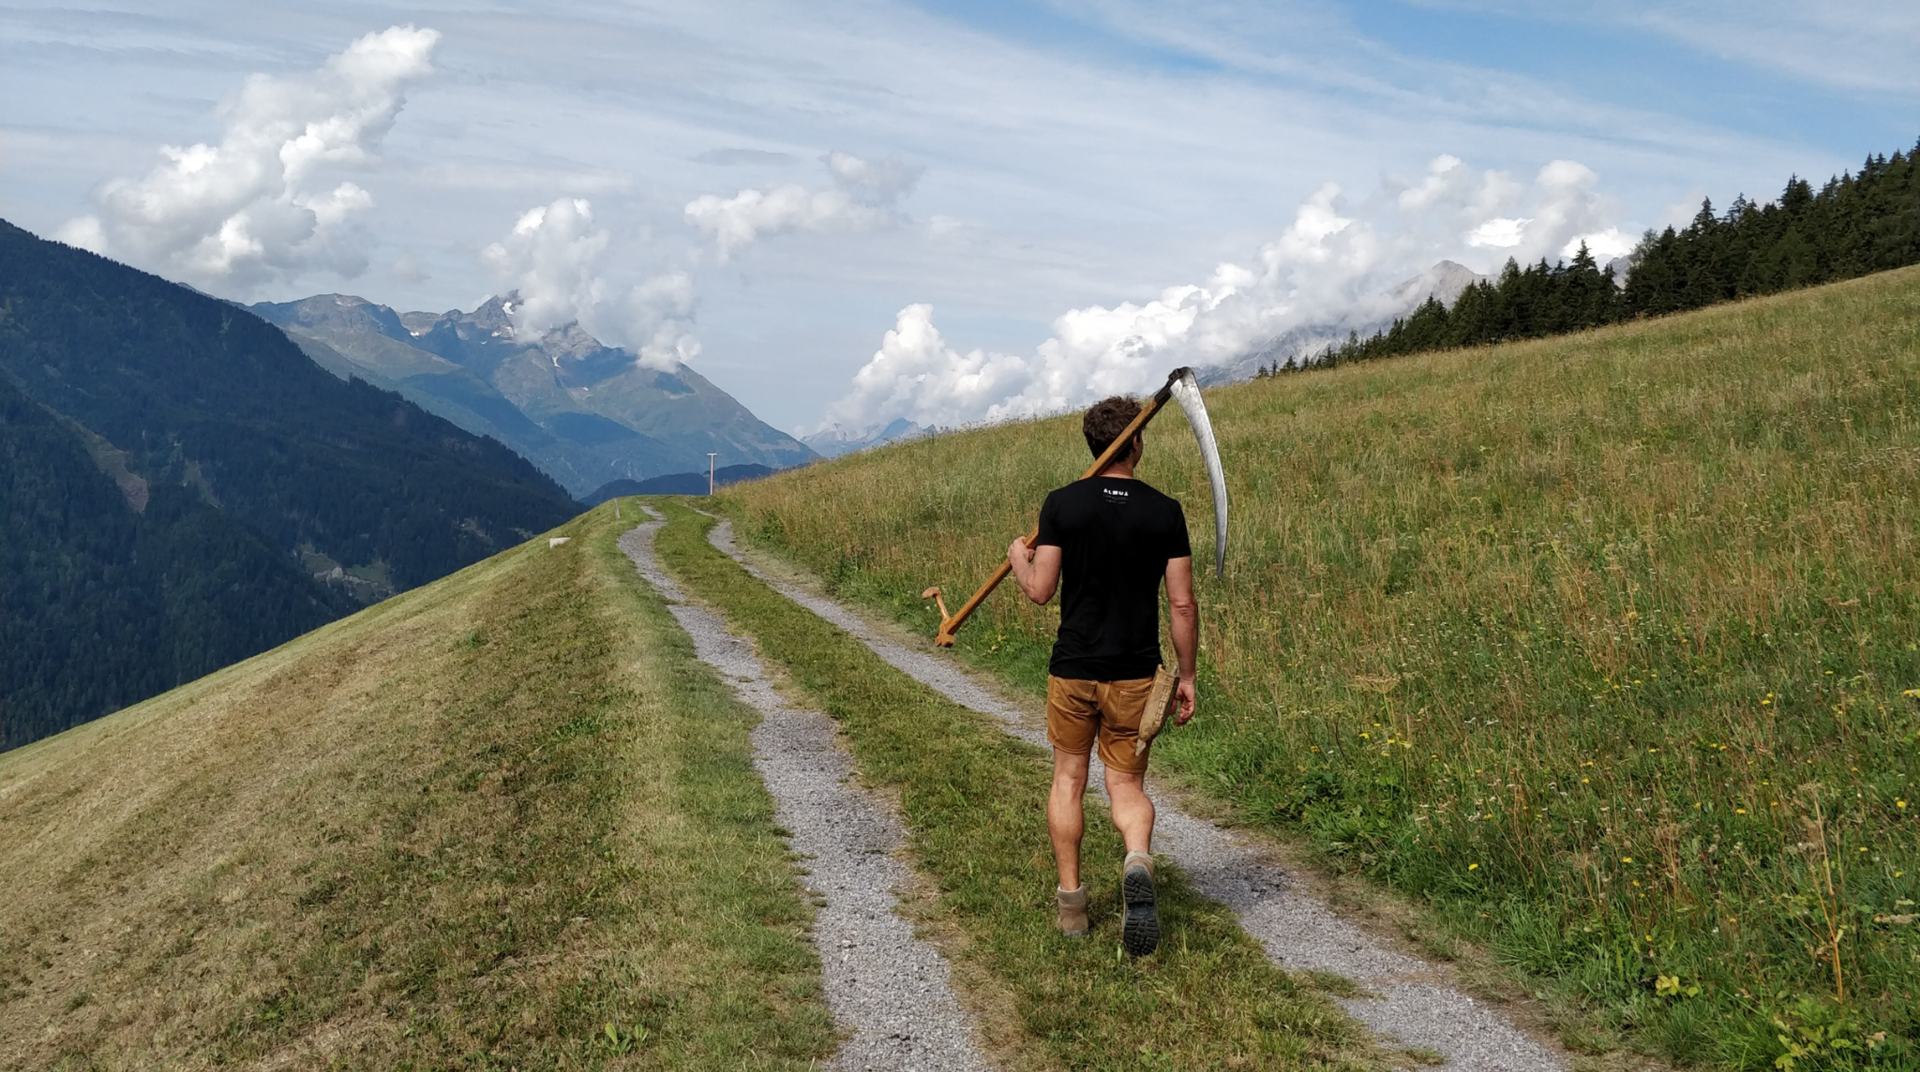 Herr mit Sense geht in einem Traumhaften Alpenpanorama spazieren. Hier in Tirol kommt das Almheu für die Lampen her.